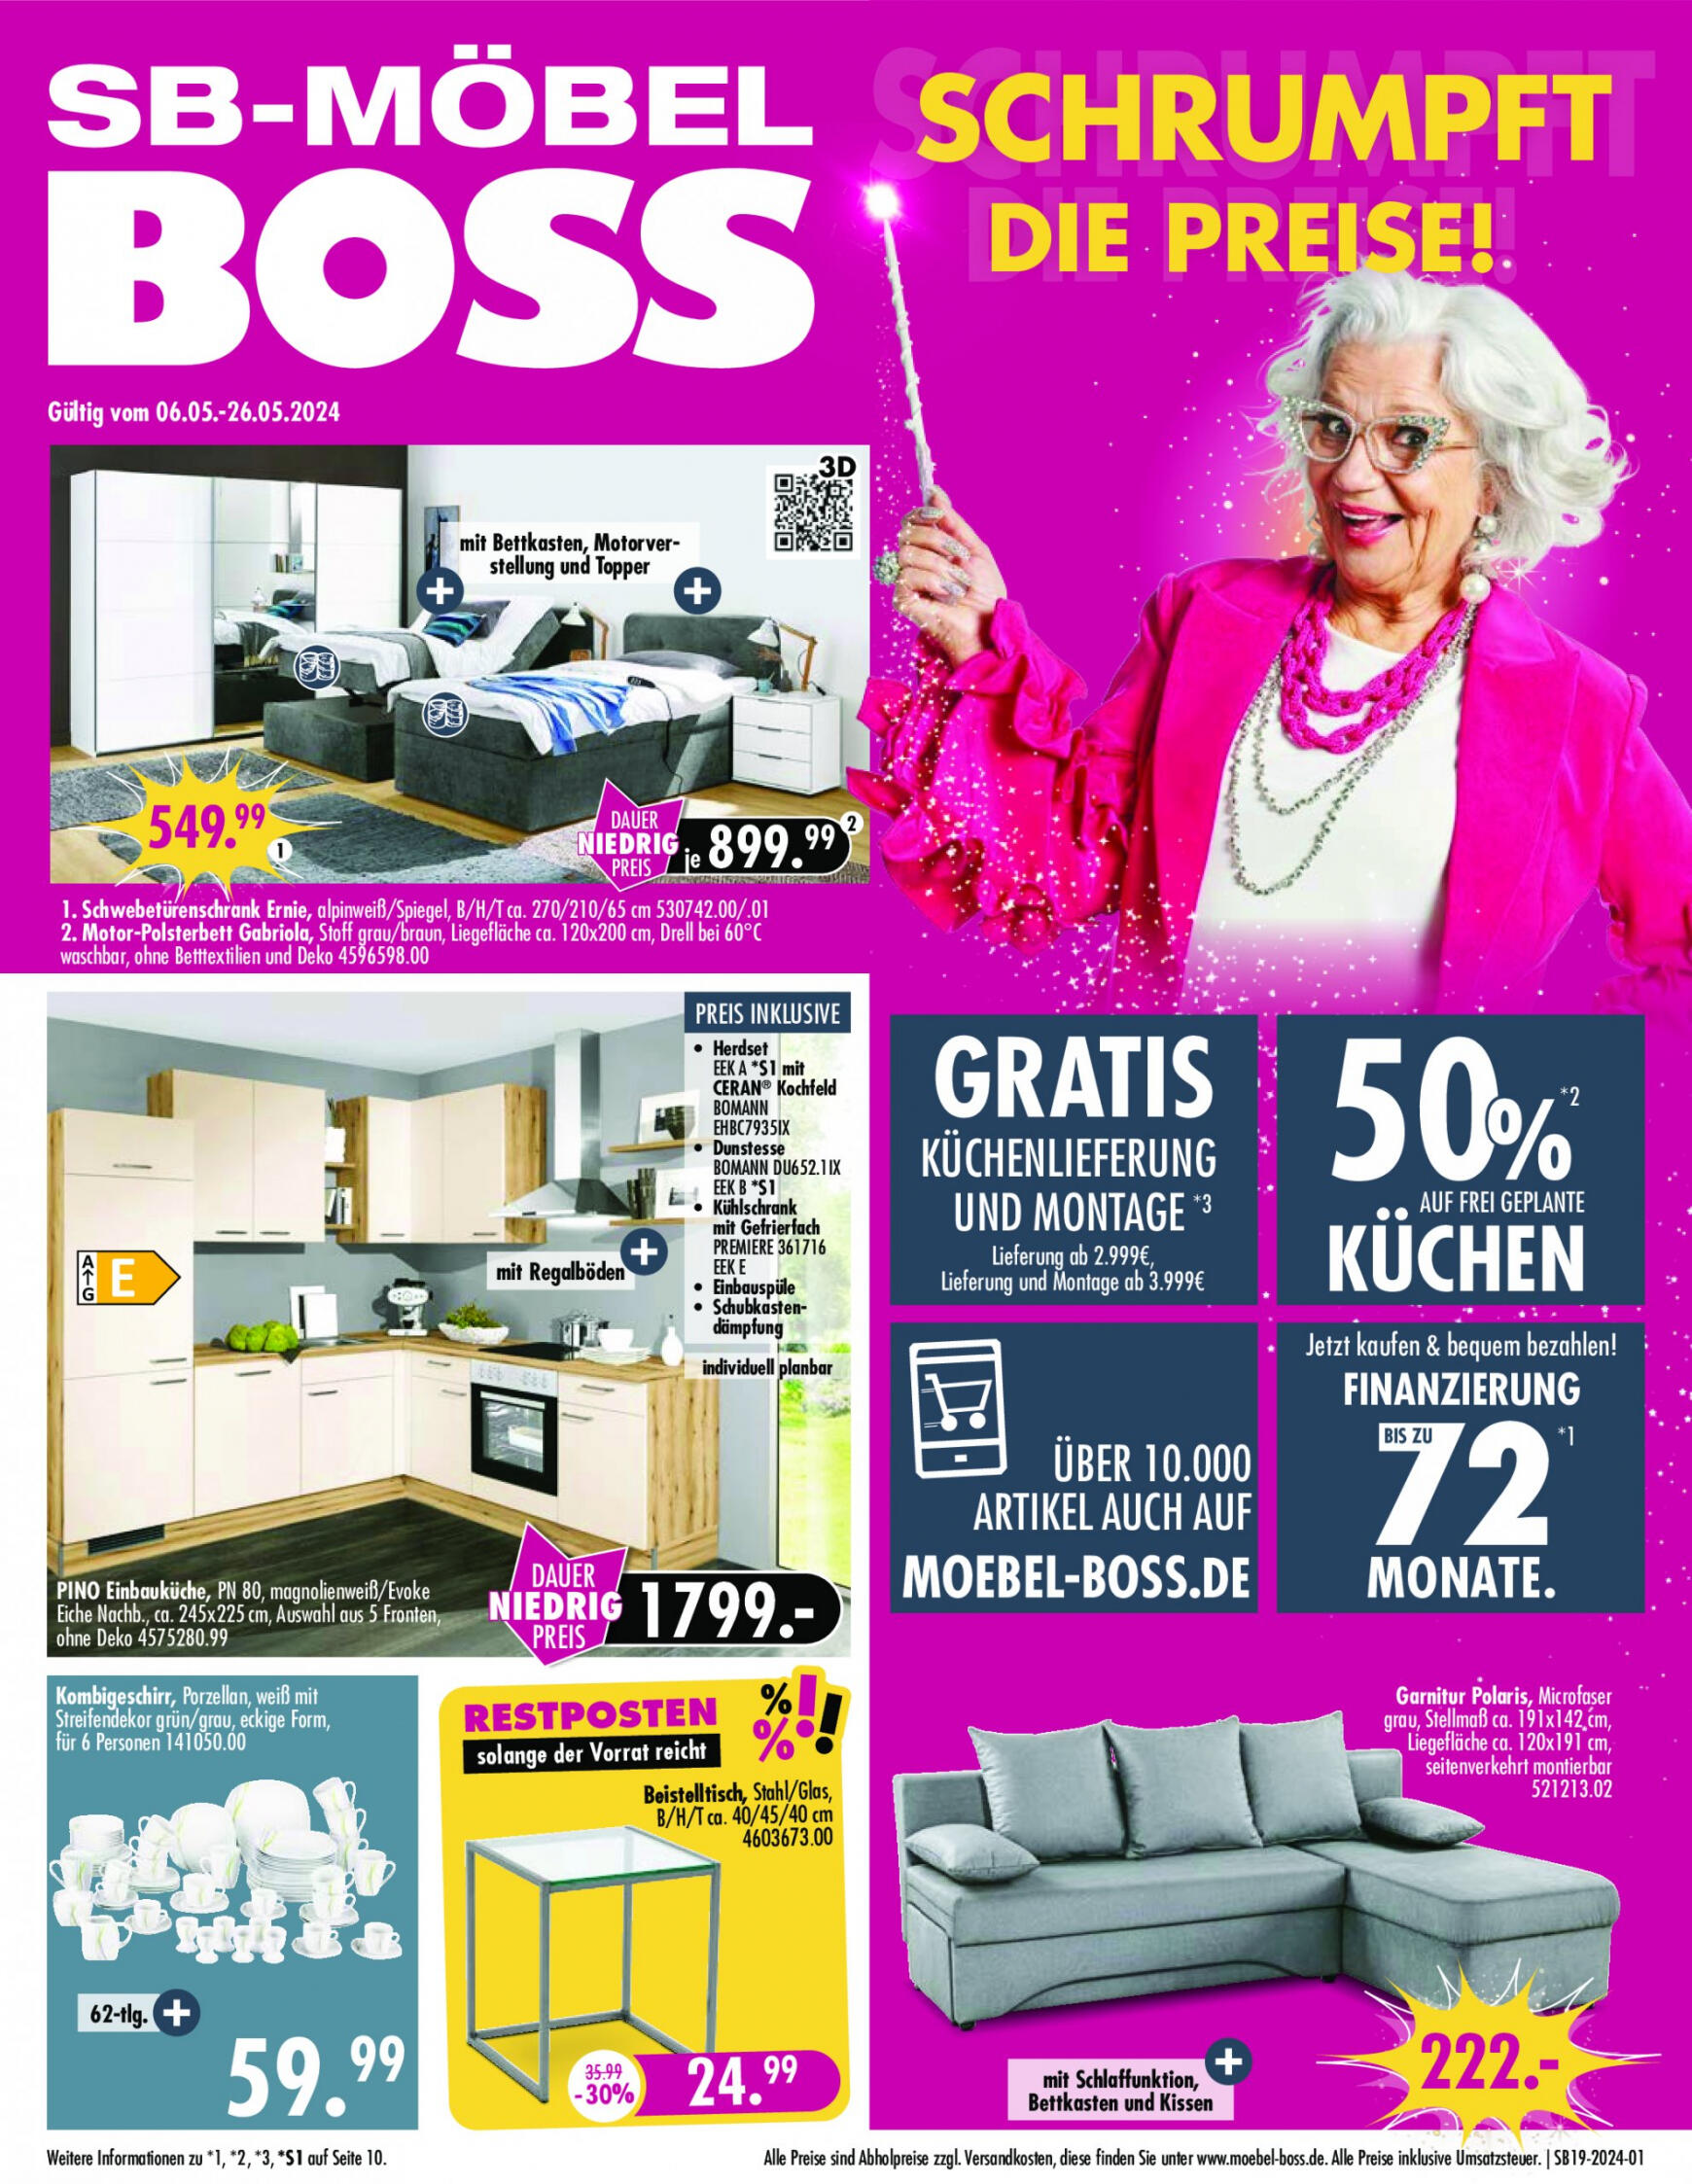 moebel-boss - Flyer SB Möbel BOSS - Aktuelle Angebote bei Möbel Boss aktuell 06.05. - 26.05. - page: 1